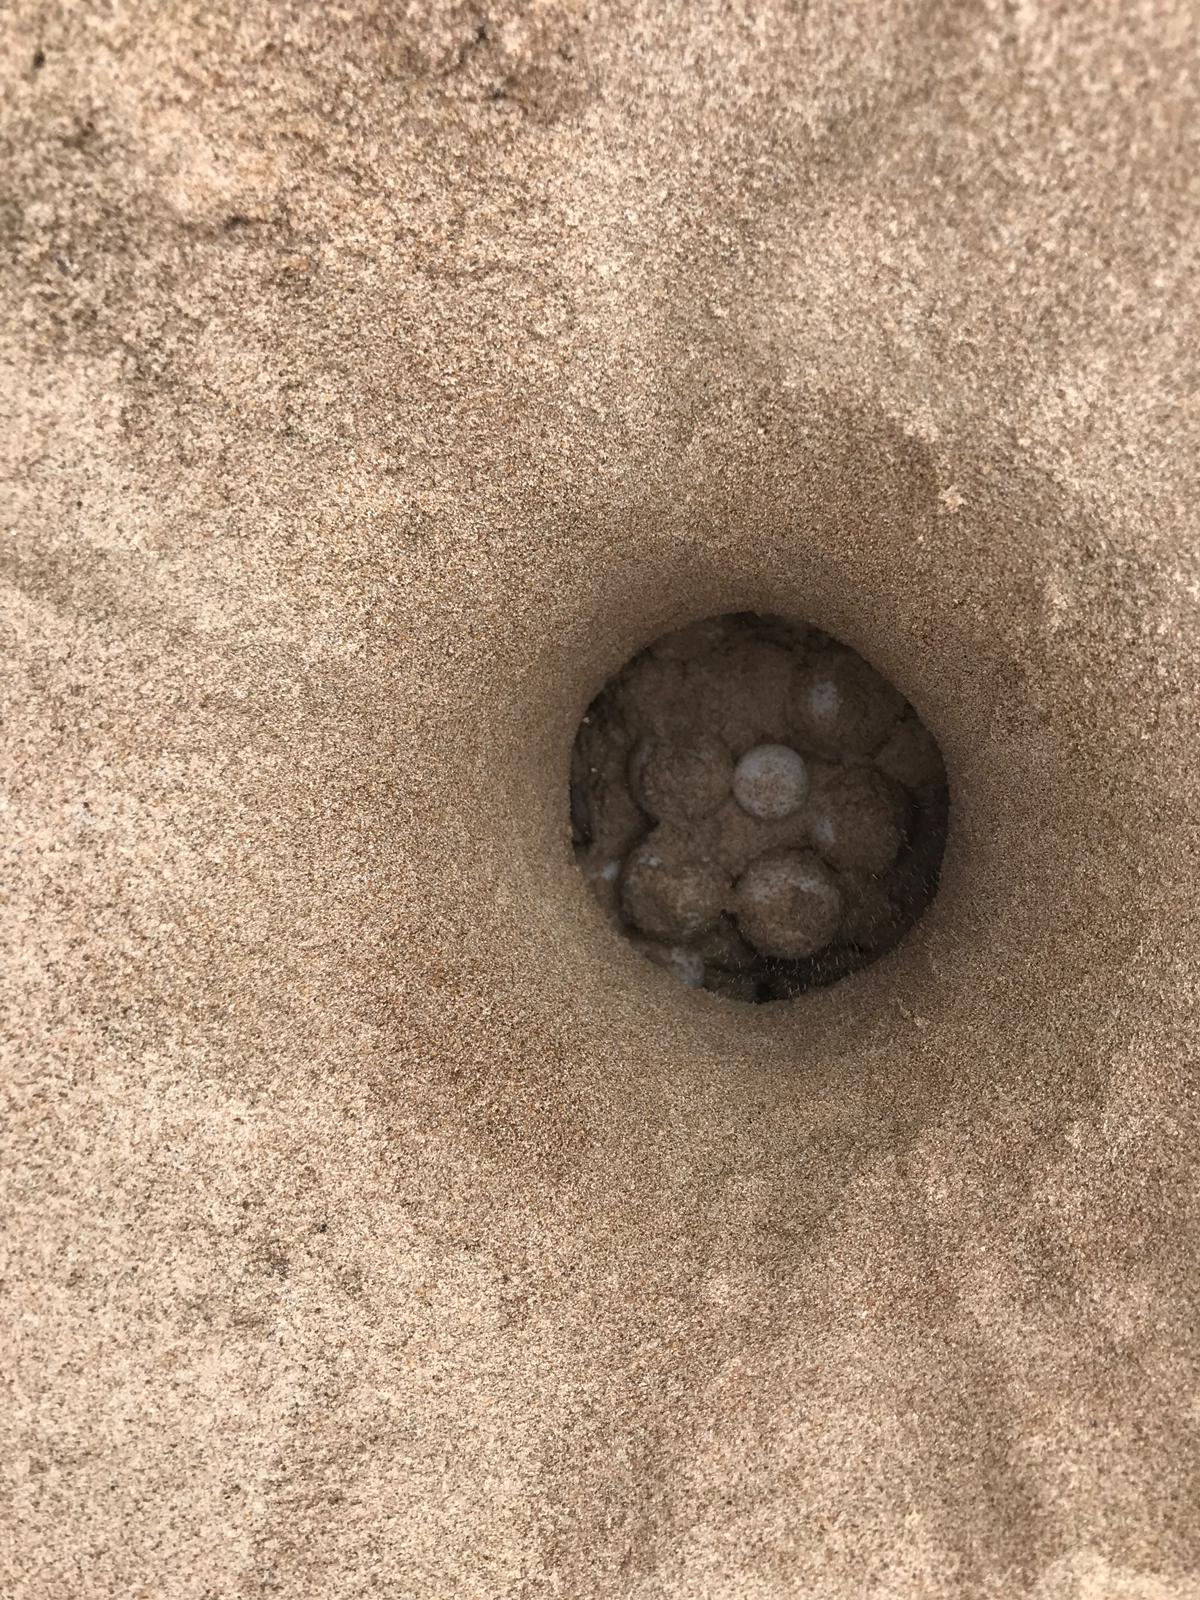 El nido hallado en la playa de Castelló. Imagen: Fundación Oceanogràfic